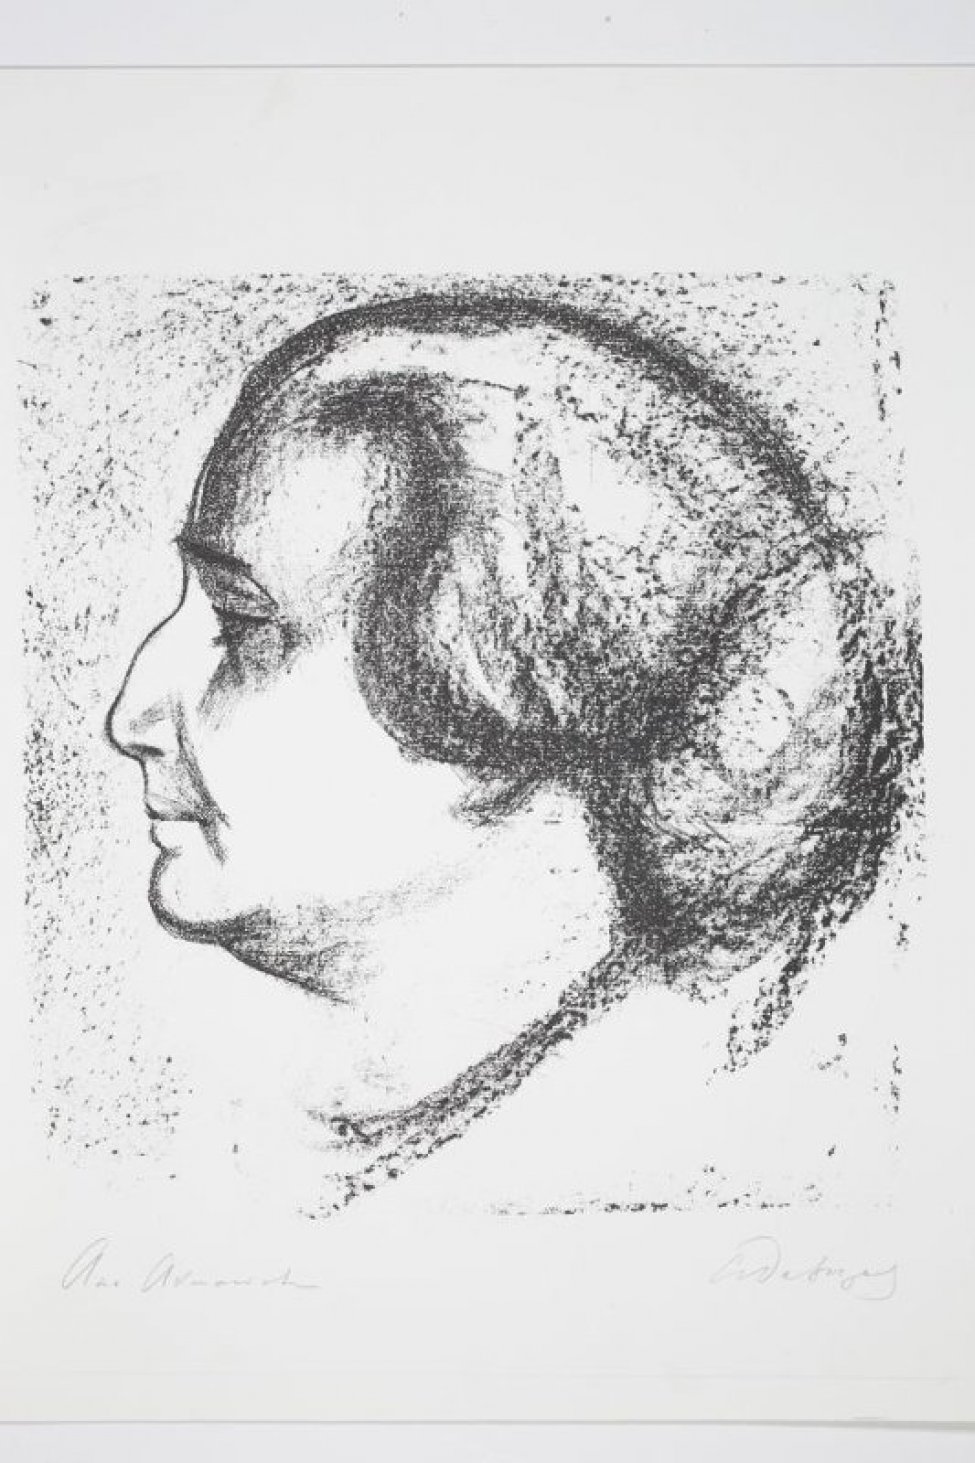 Изображена в профиль голова А.А.Ахматовой.Волосы зачесаны назад и уложены большим узлом на затылке. На шее- бусы.